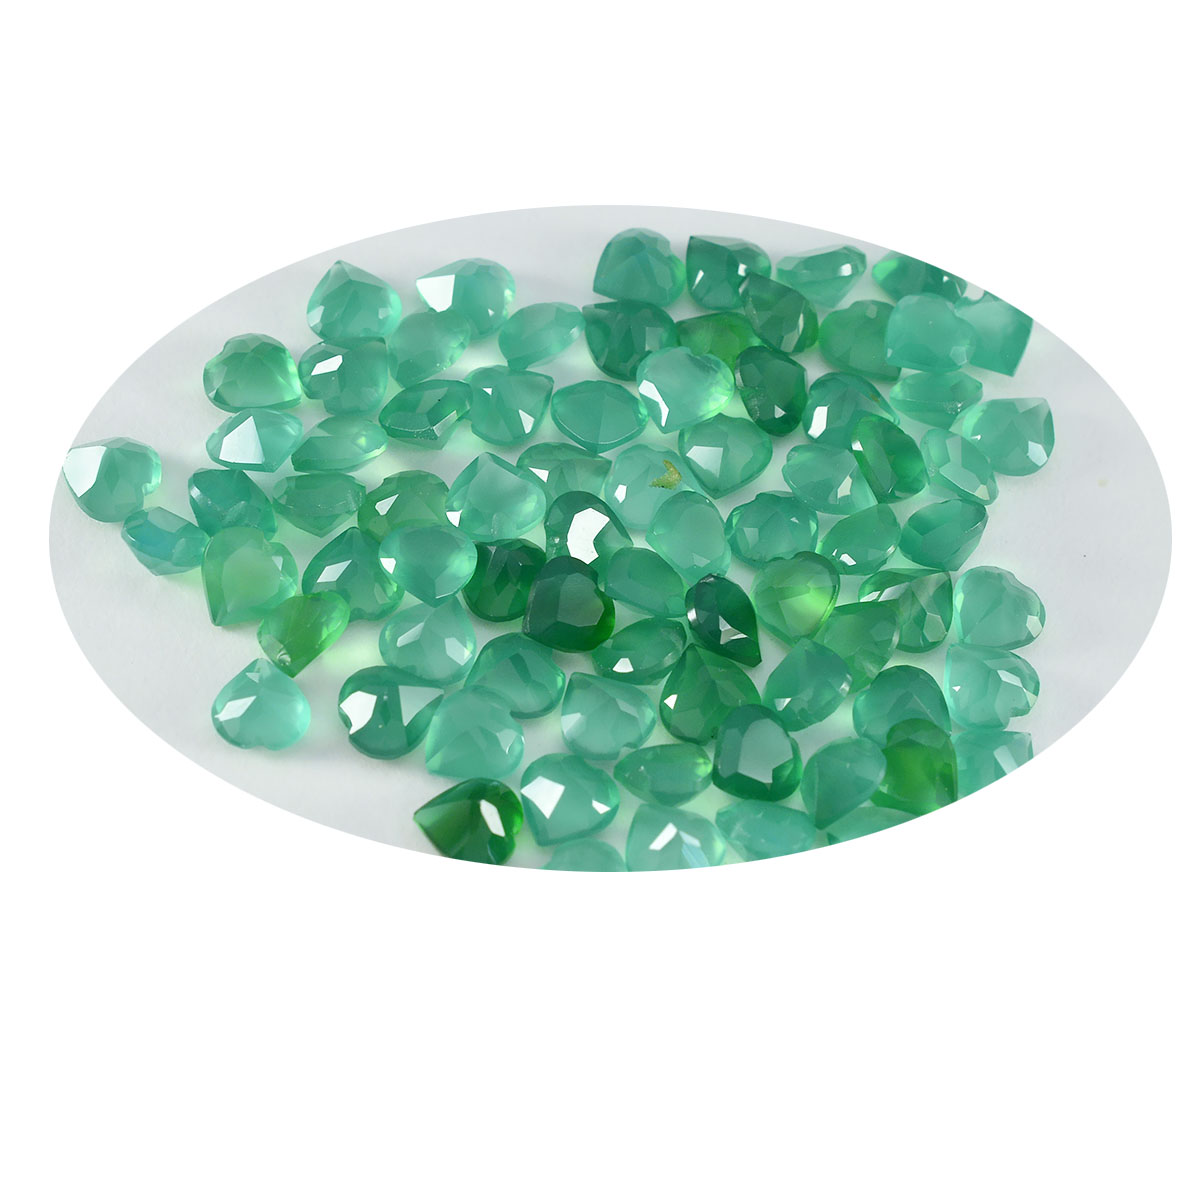 Riyogems 1PC echte groene onyx gefacetteerde 5x5 mm hartvorm aantrekkelijke kwaliteit losse edelsteen